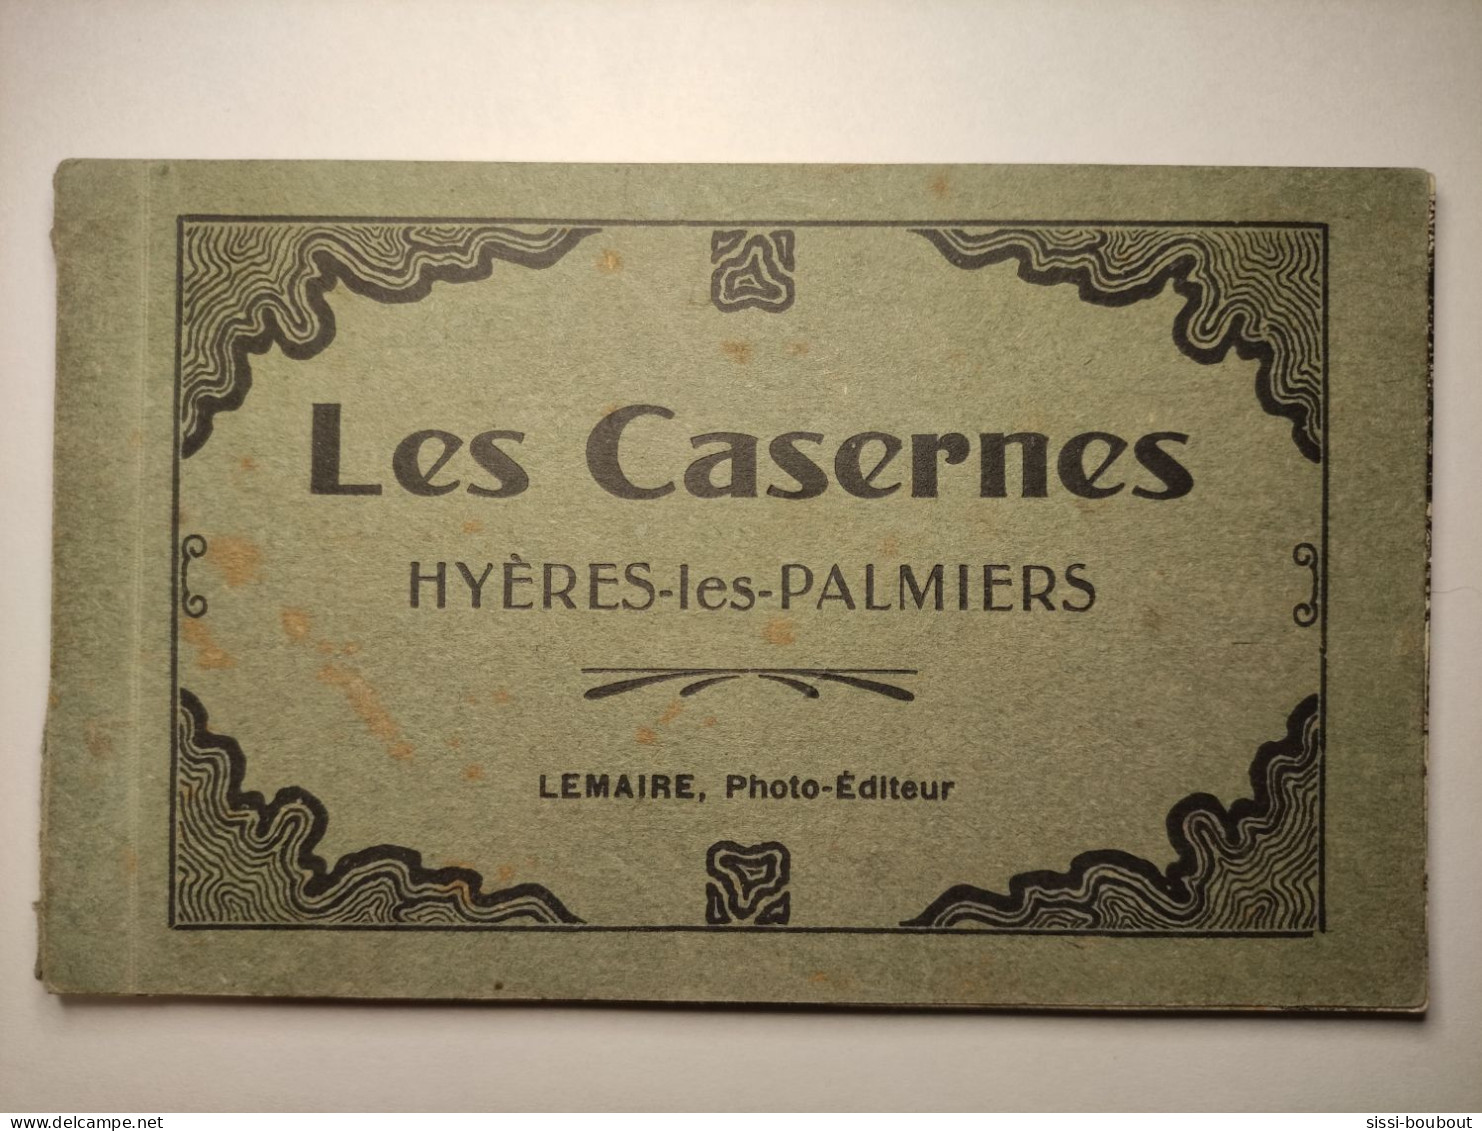 HYERES-LES-PALMIERS - Les Casernes - Manque 3 Cartes - Photo-Editeur LEMAIRE - Hyeres